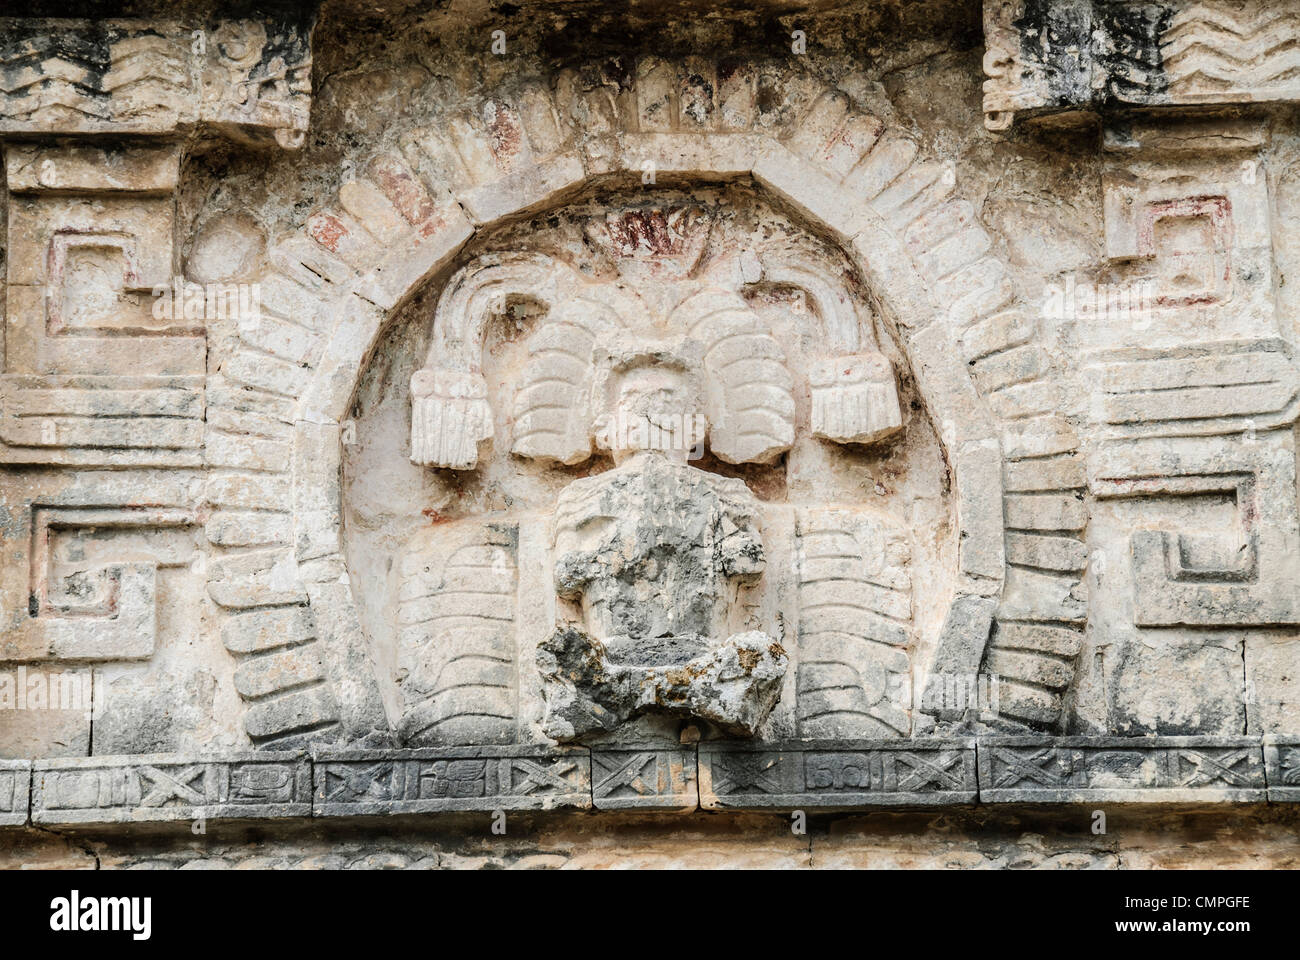 CHICHEN ITZA, Mexique - une sculpture d'un roi maya dans le mur de l'un des immeubles à Chichen Itza ruines Mayas dans la péninsule du Yucatan au Mexique Banque D'Images